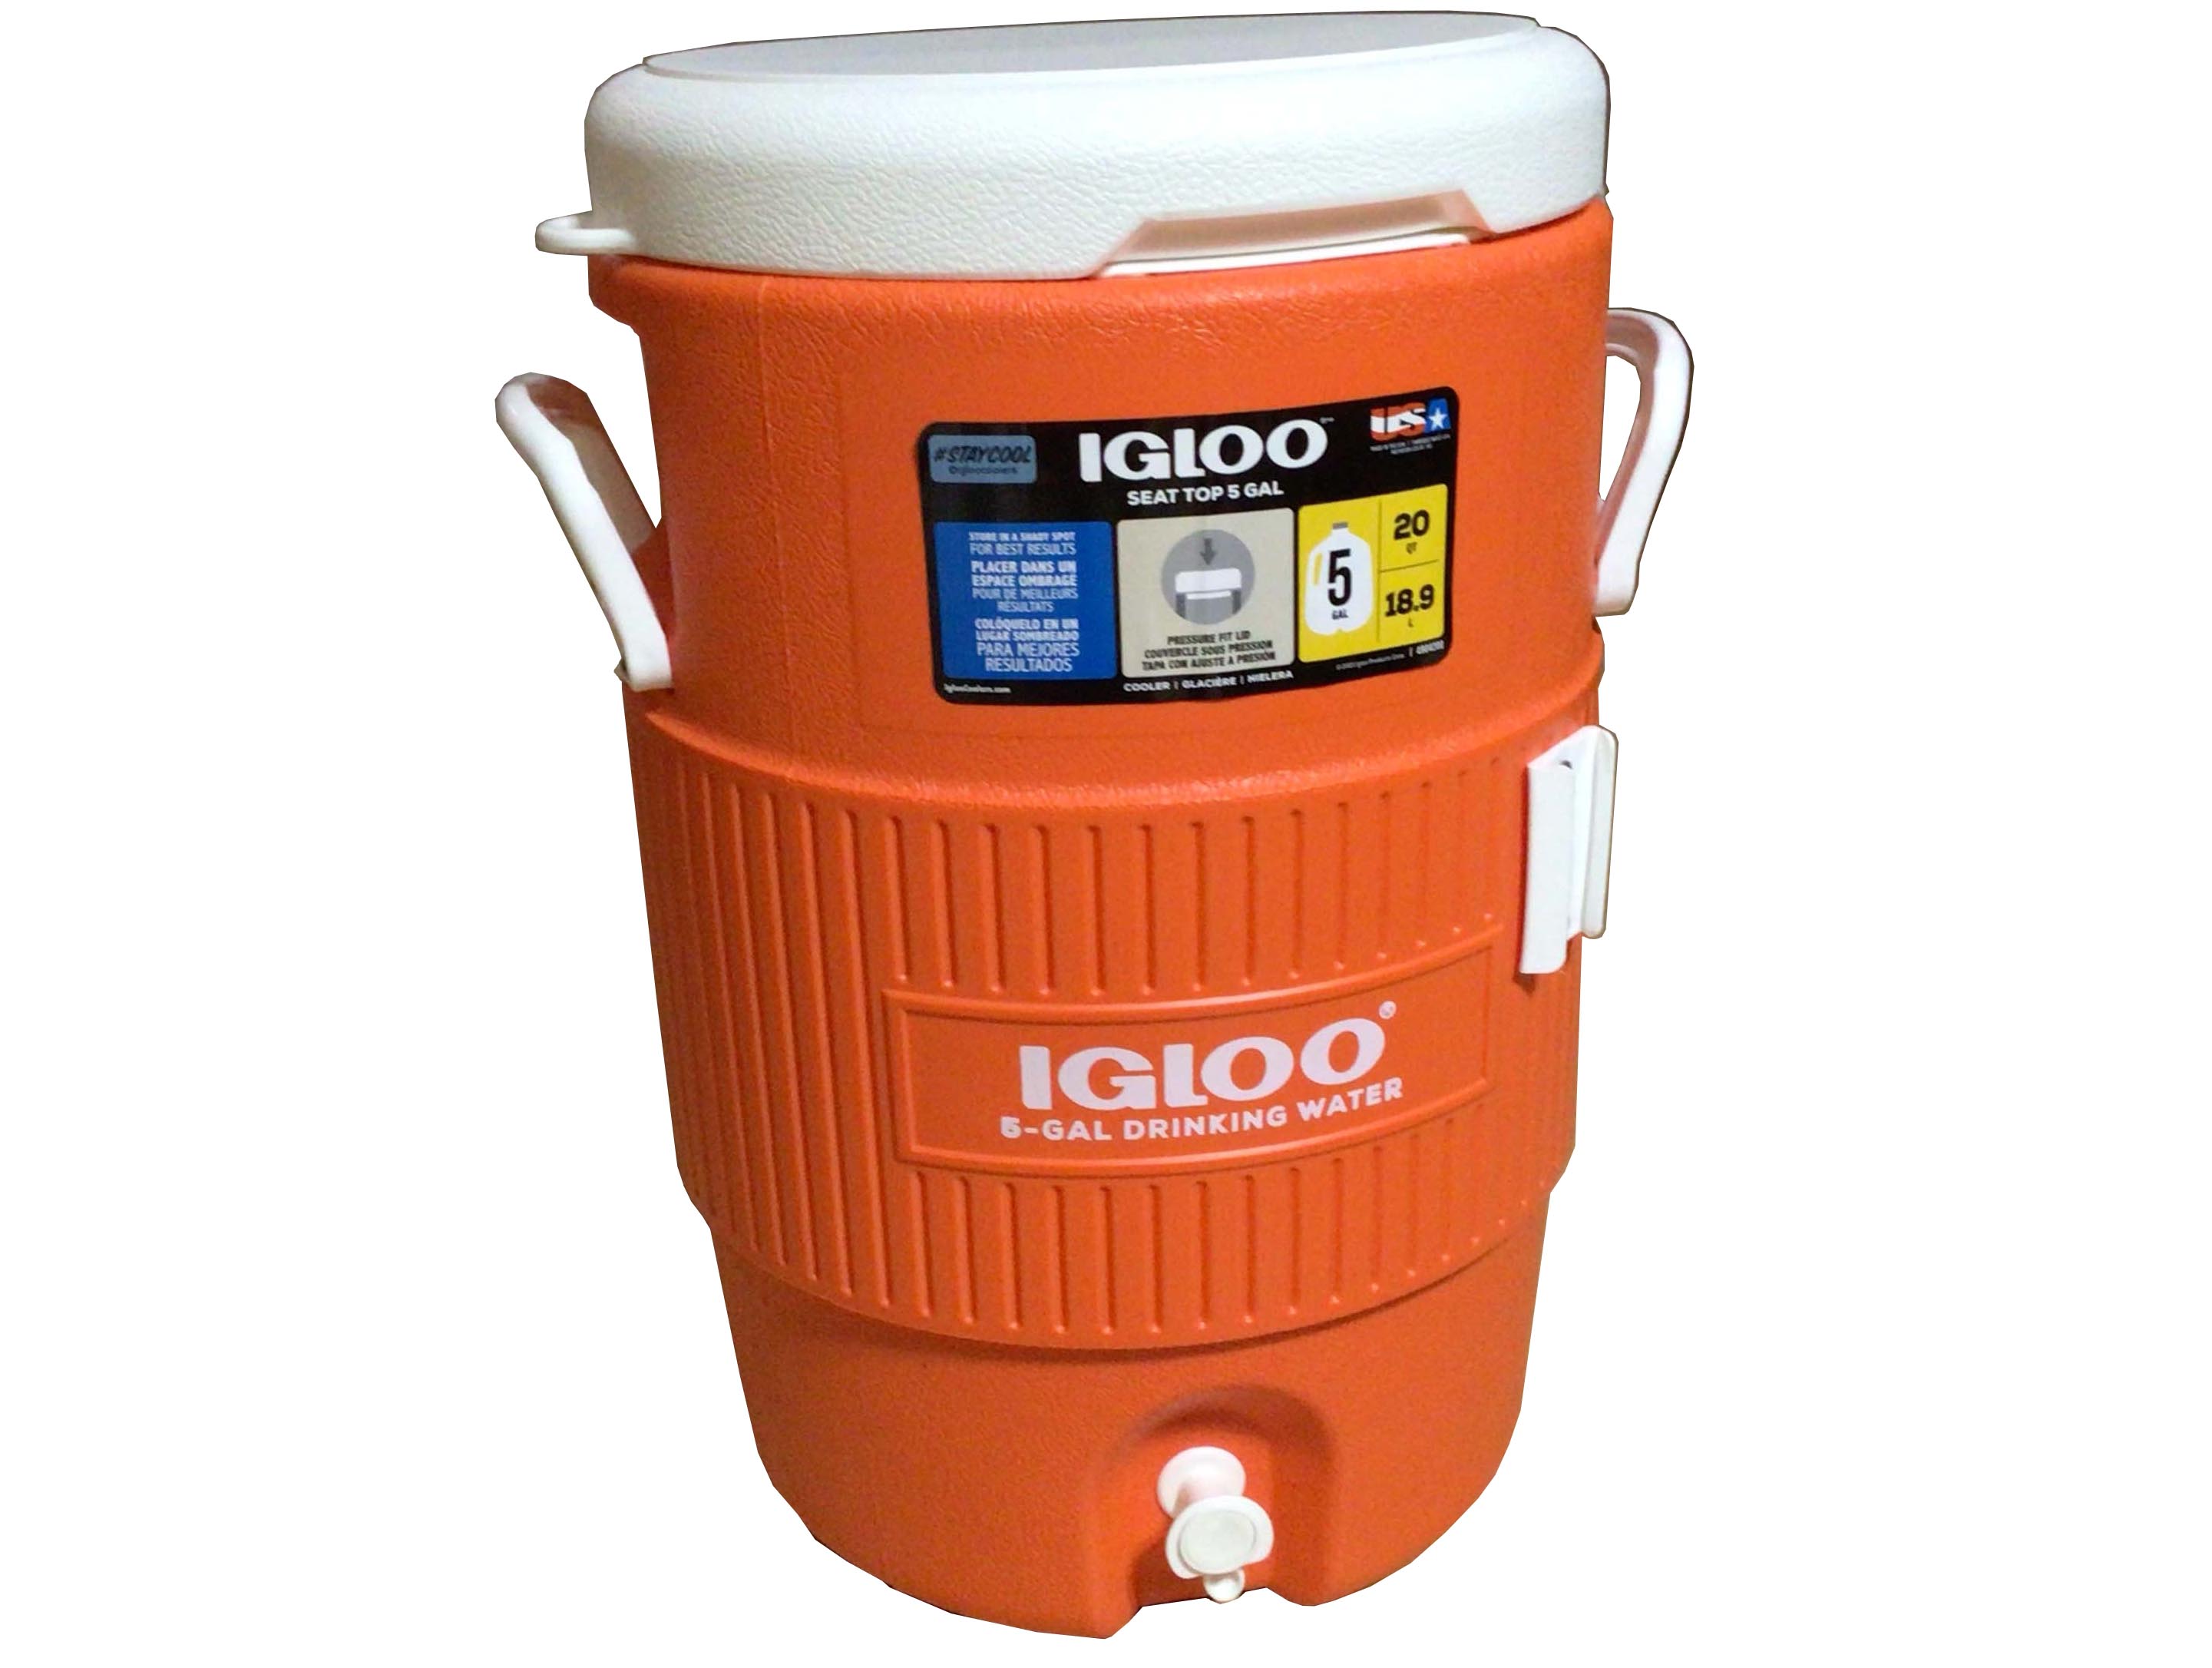 5-gallon water jug